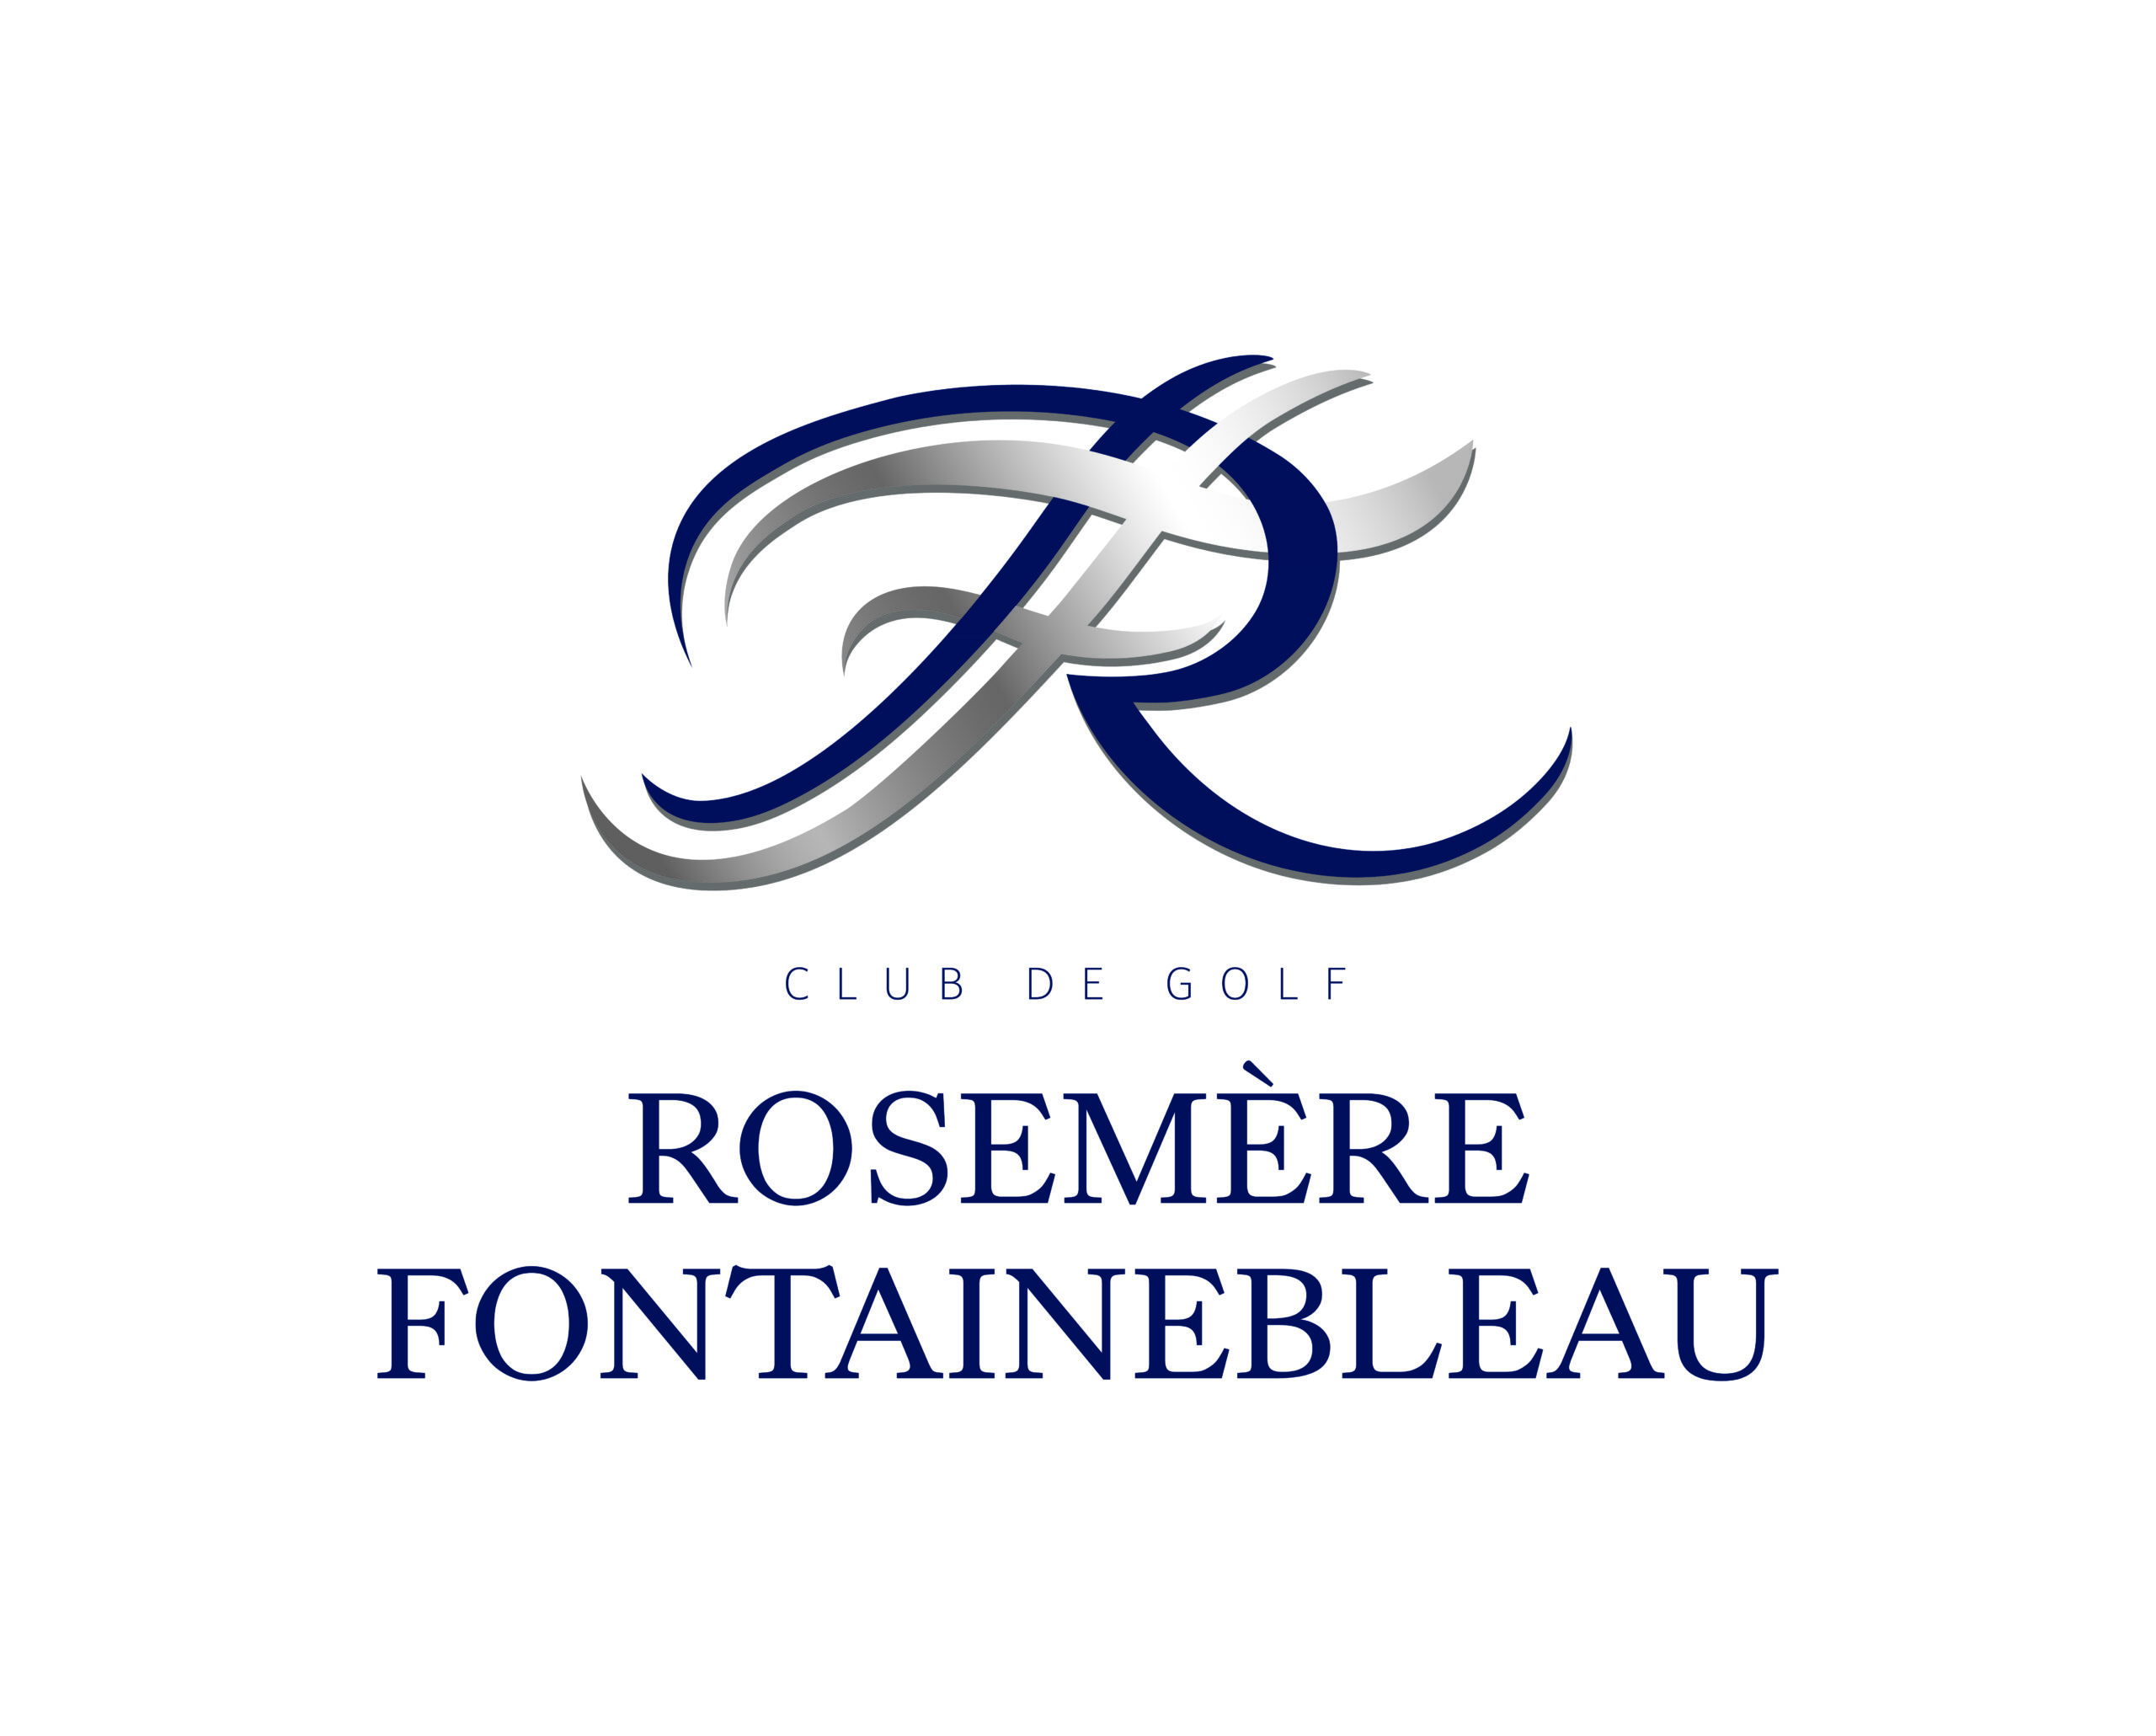 Club de Golf Rosemère Fontainebleau | Clients | King Communications